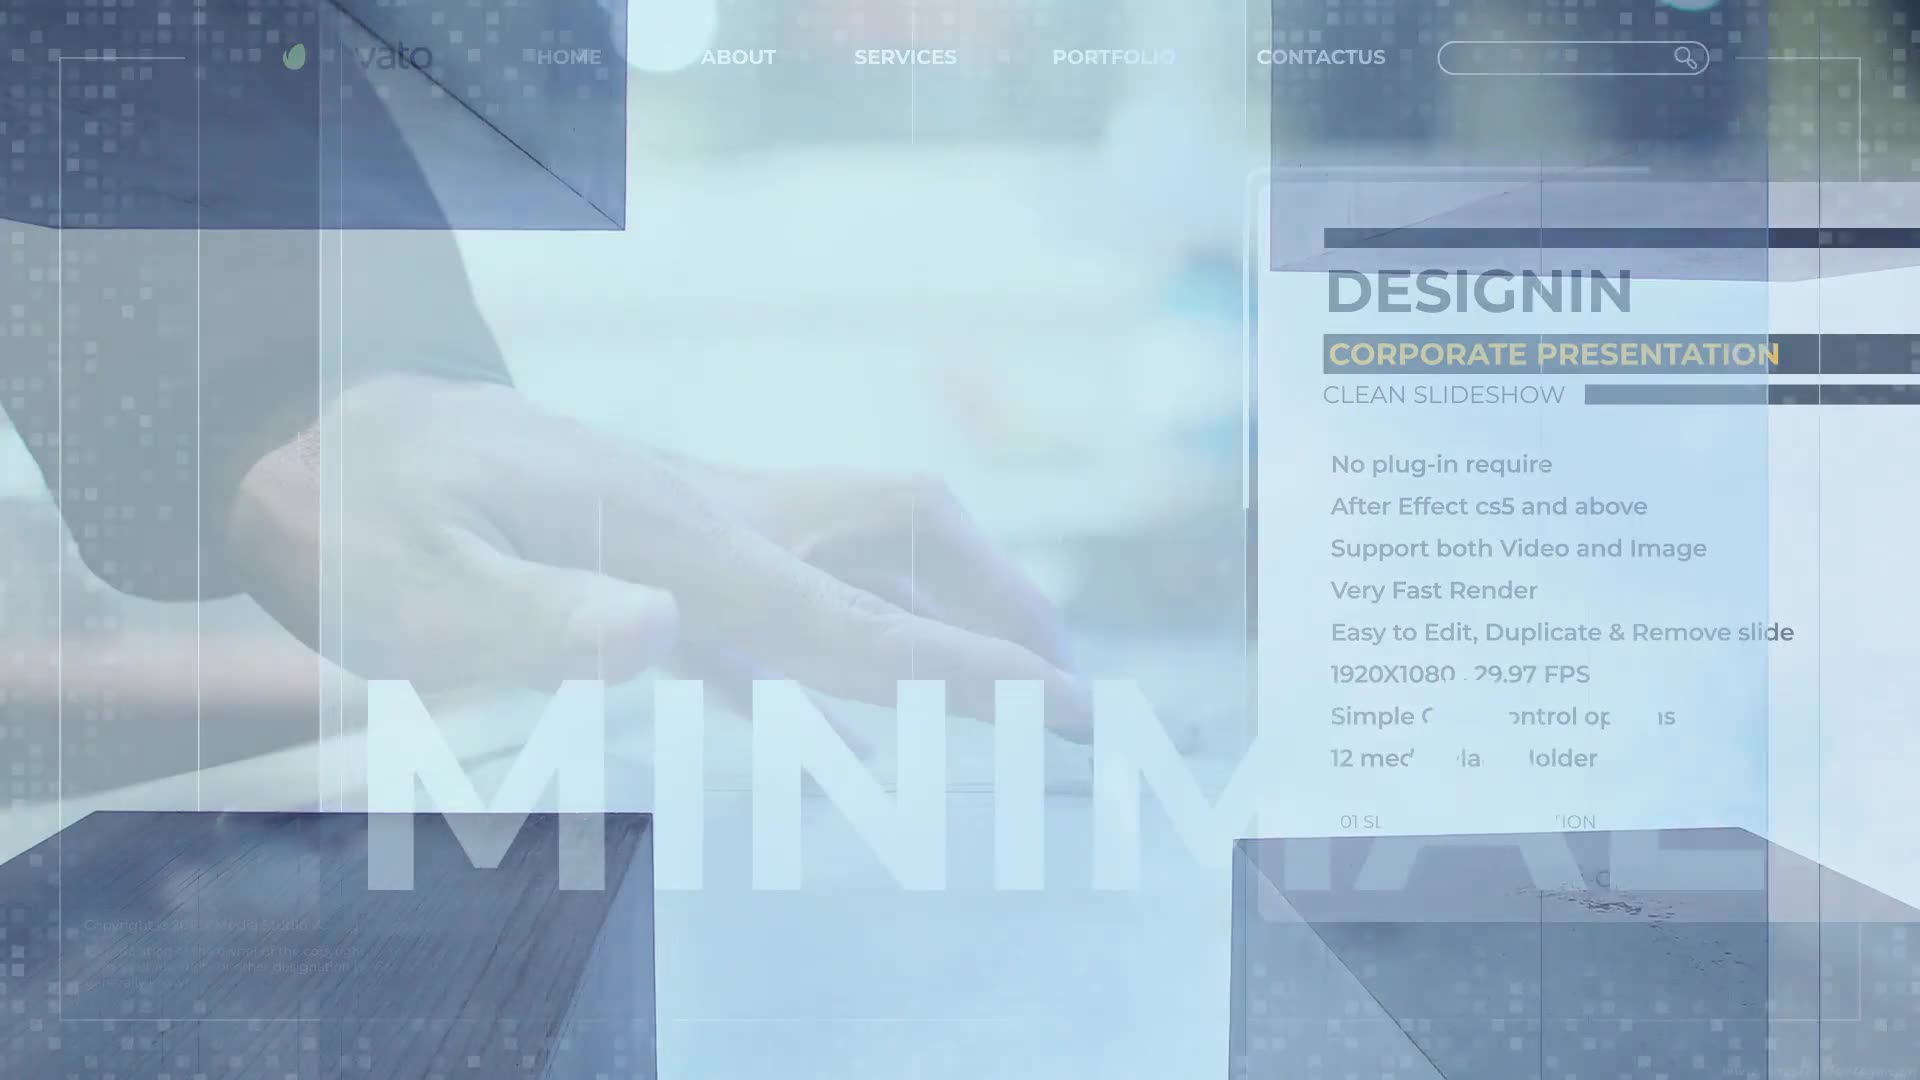 Designin Corporate Presentation – Premiere Pro Videohive 28441132 Premiere Pro Image 2